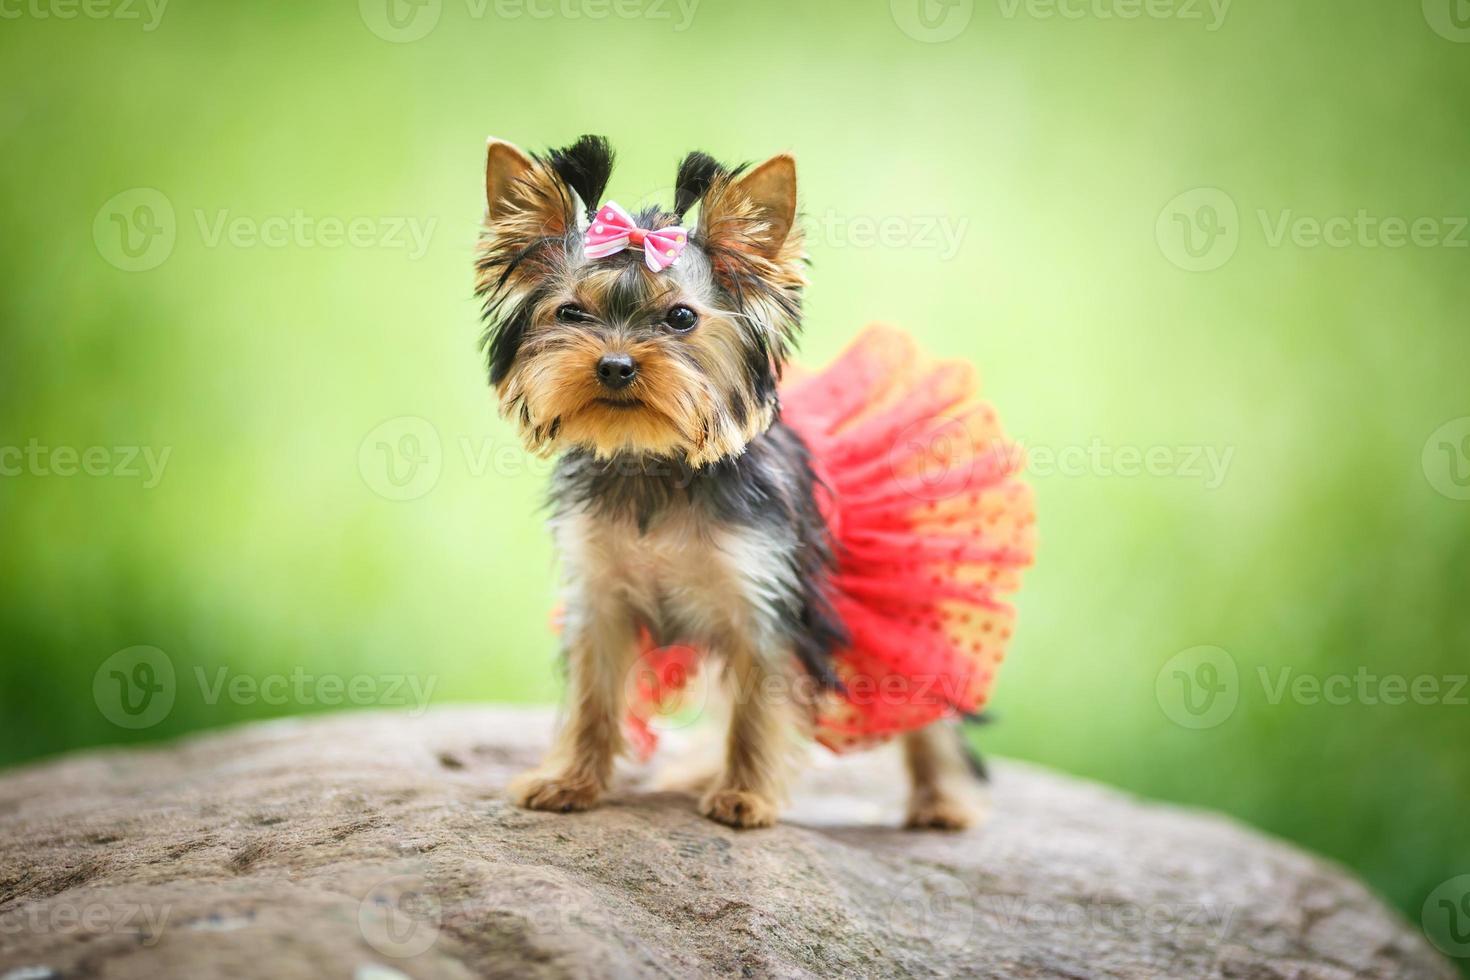 härlig valp av kvinnlig yorkshire terrier liten hund med röd kjol på grön suddig bakgrund foto